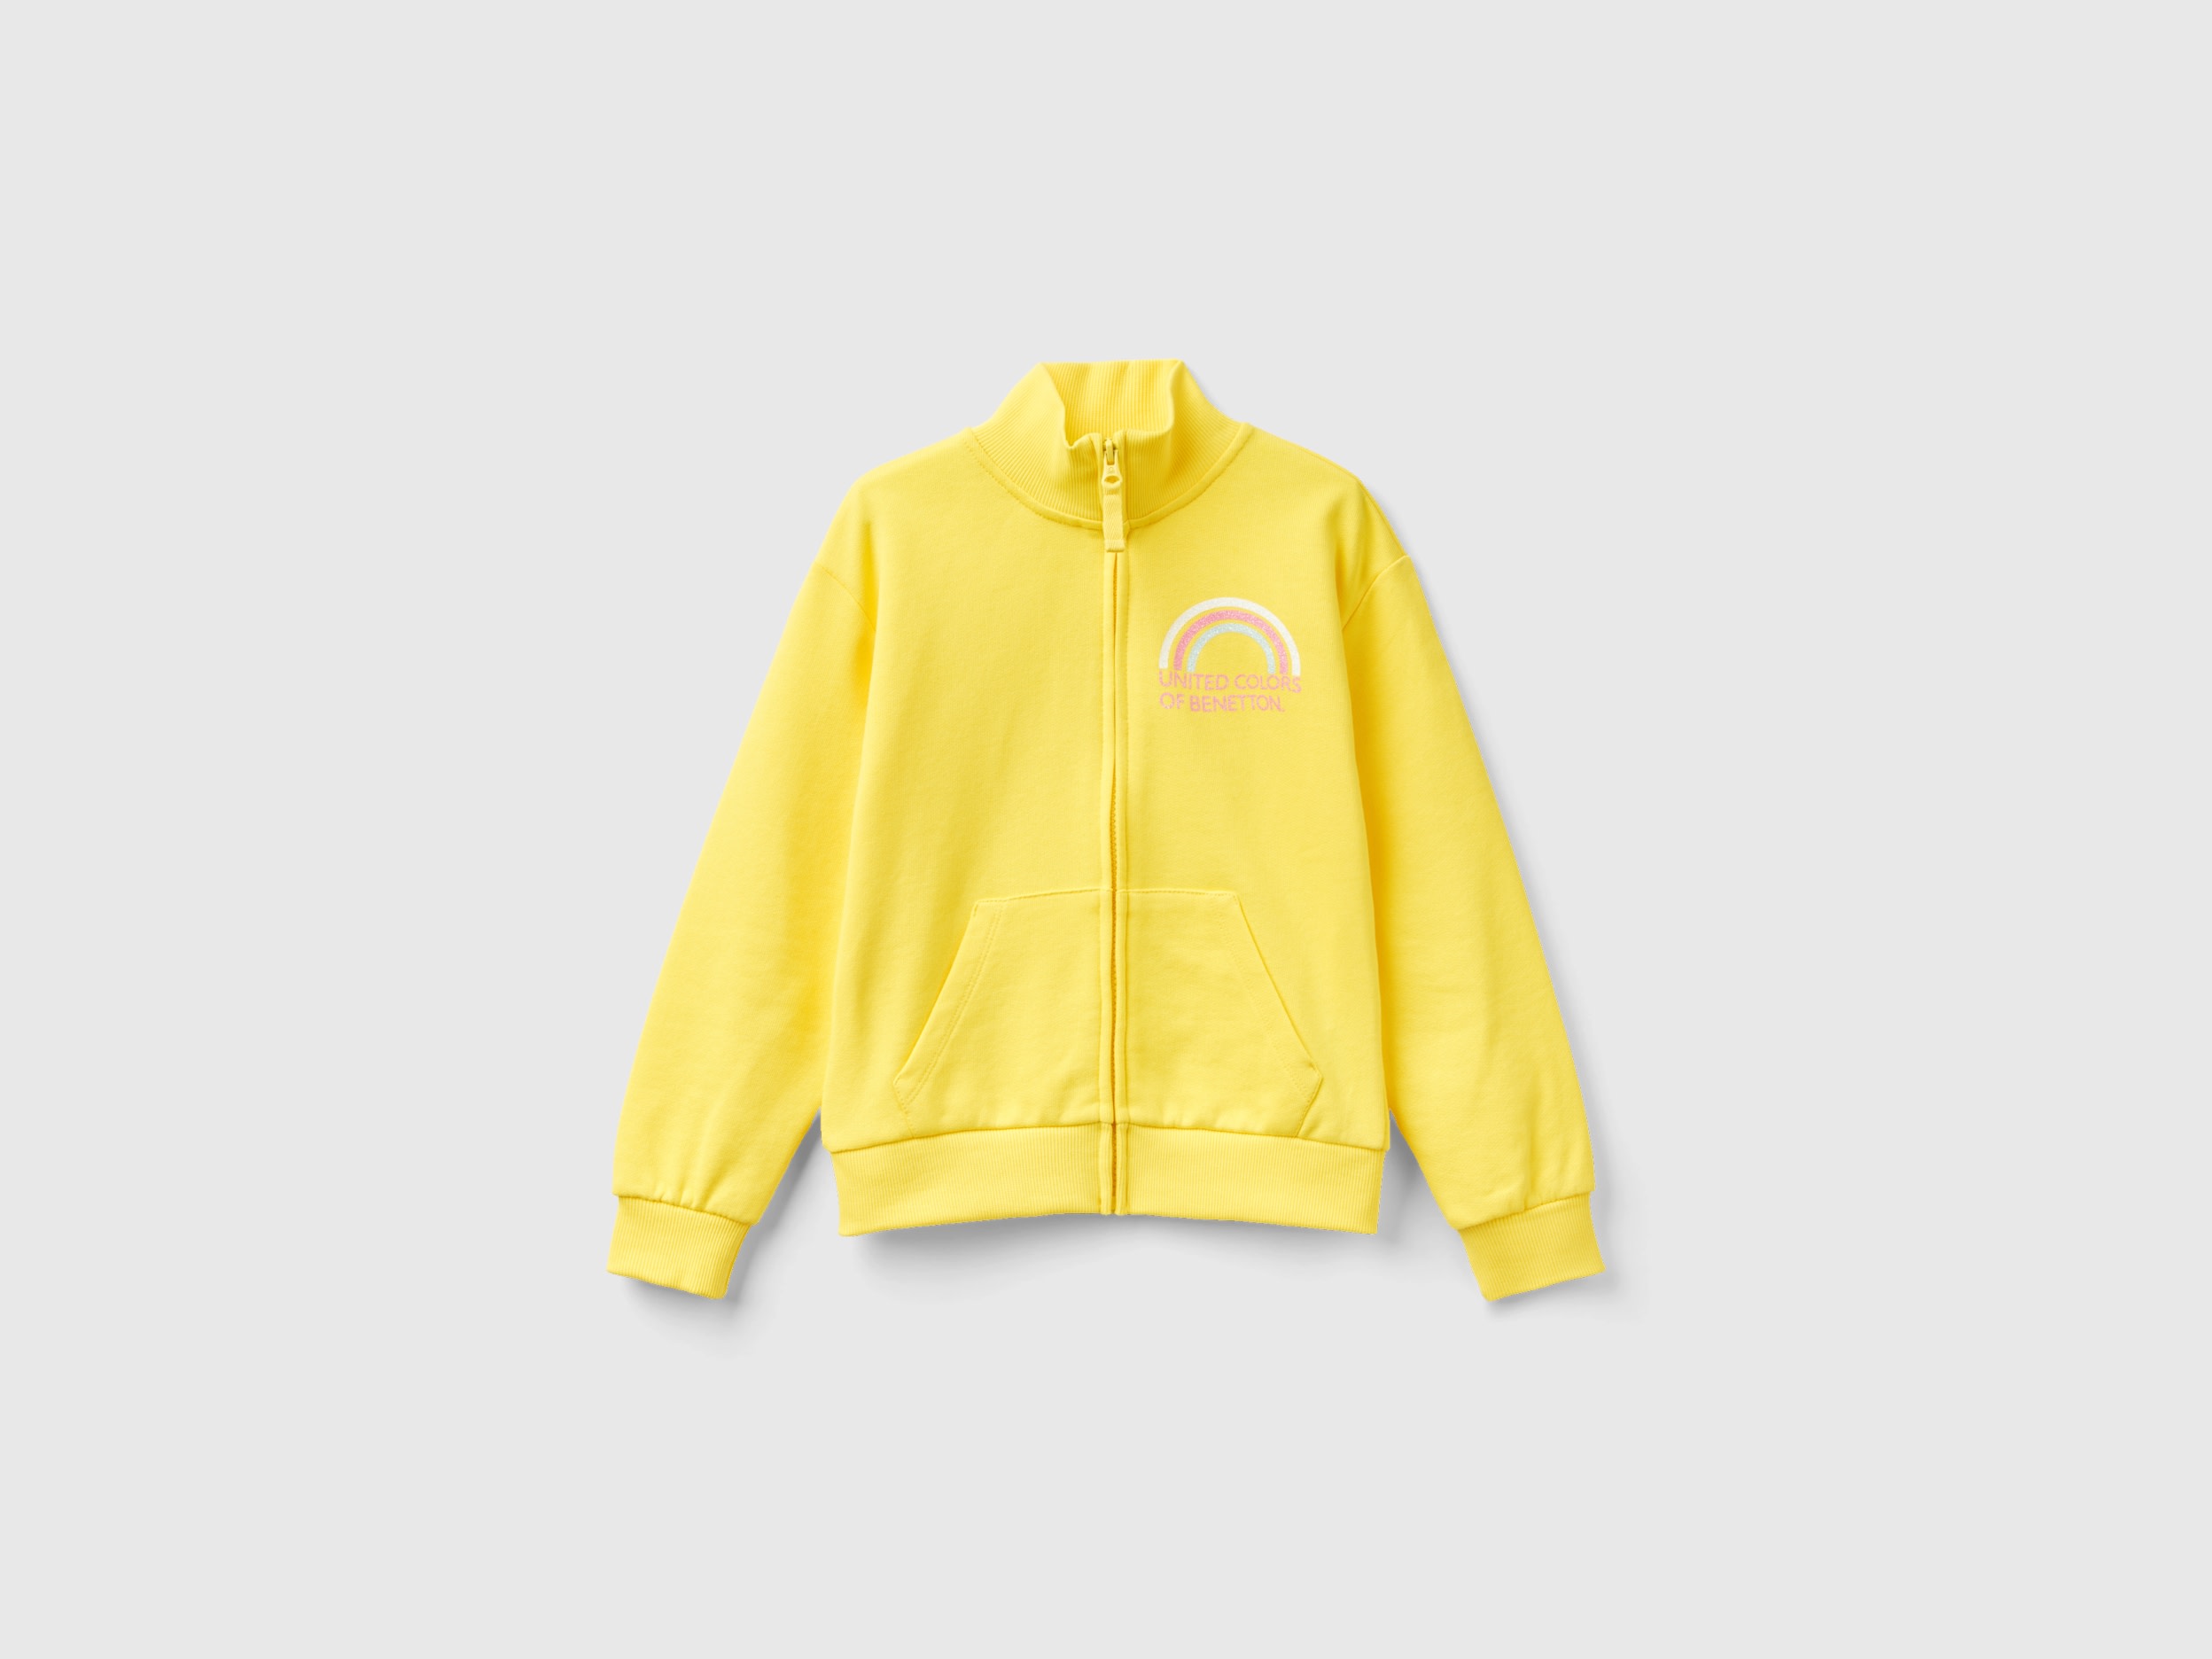 Benetton, Sweatshirt With Zip And Collar, size 3XL, Yellow, Kids